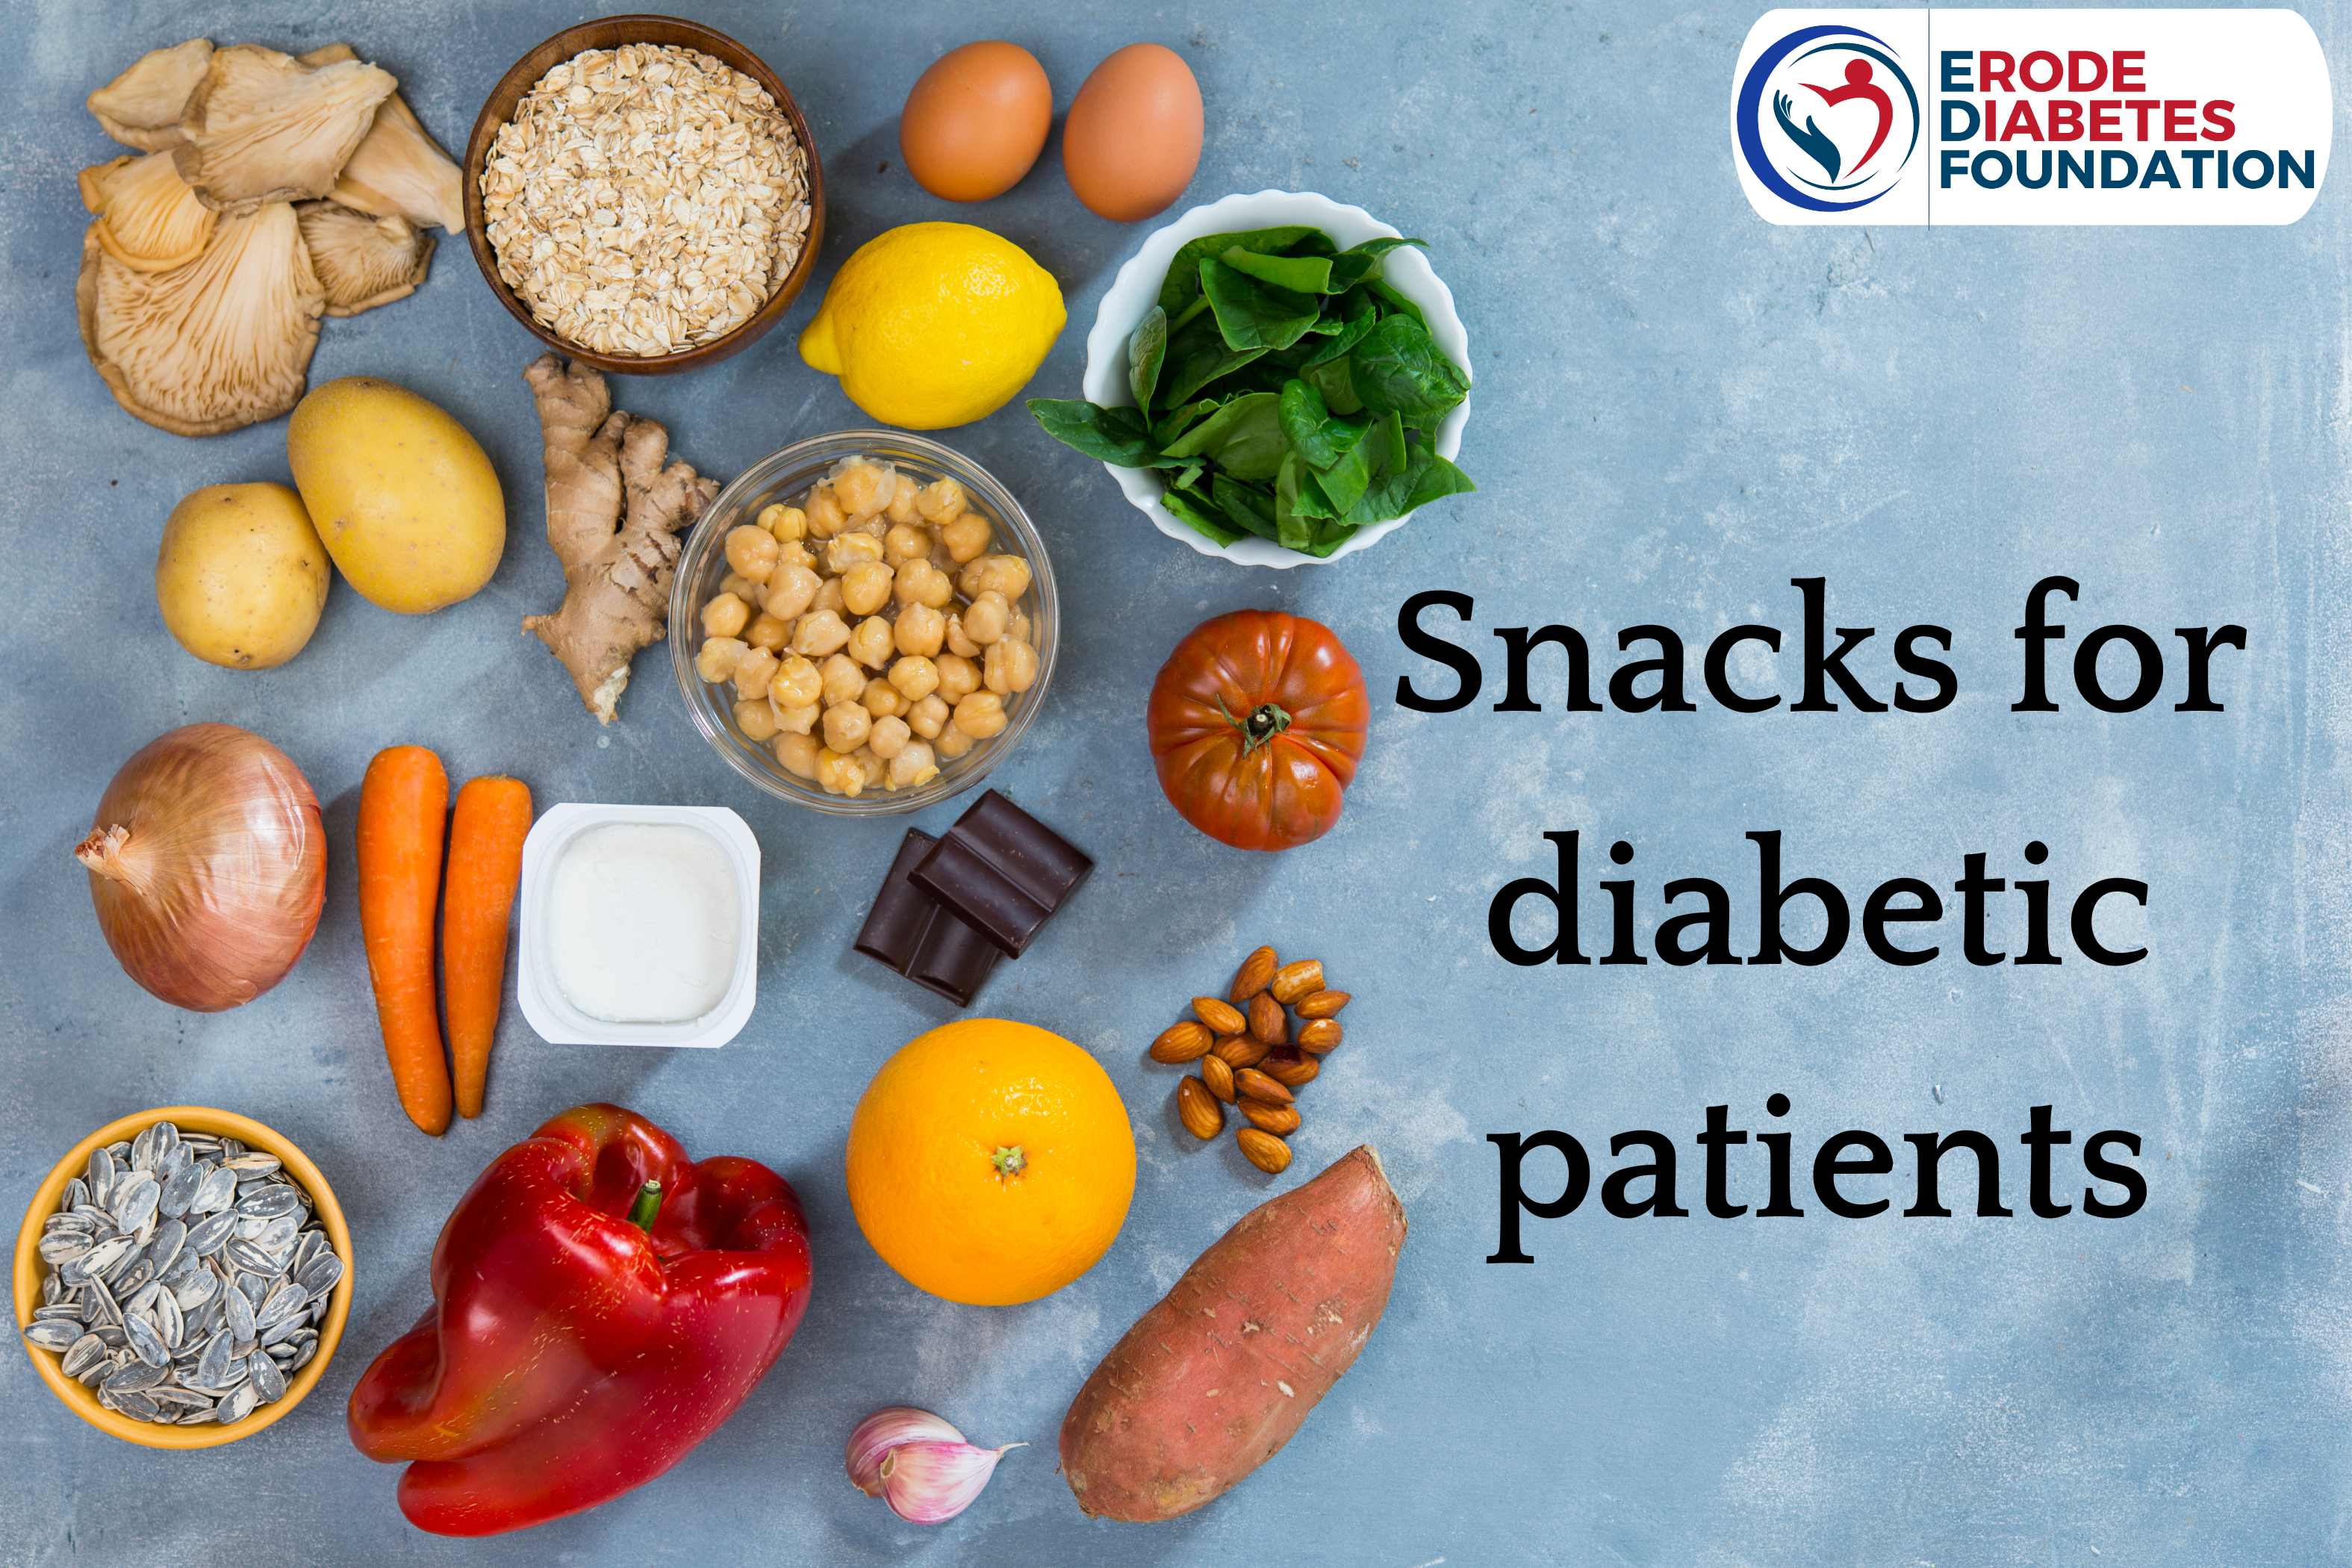 Diabetes patient's snacks - Erode diabetes foundation